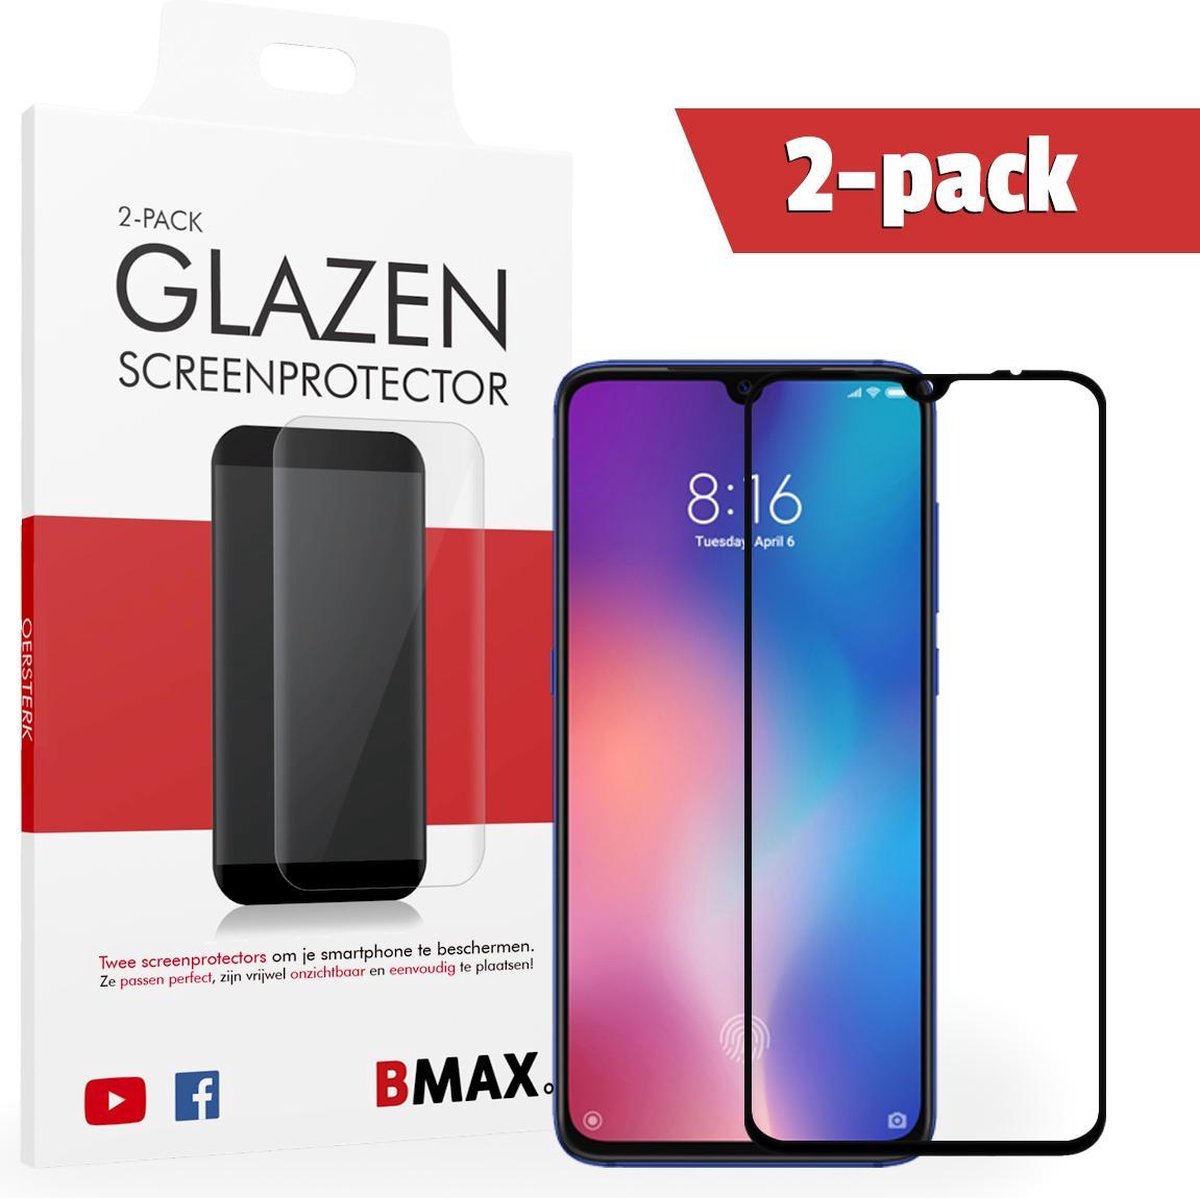 2-pack Bmax Xiaomi Mi 9 Screenprotector - Glass - Full Cover 2.5d - Black